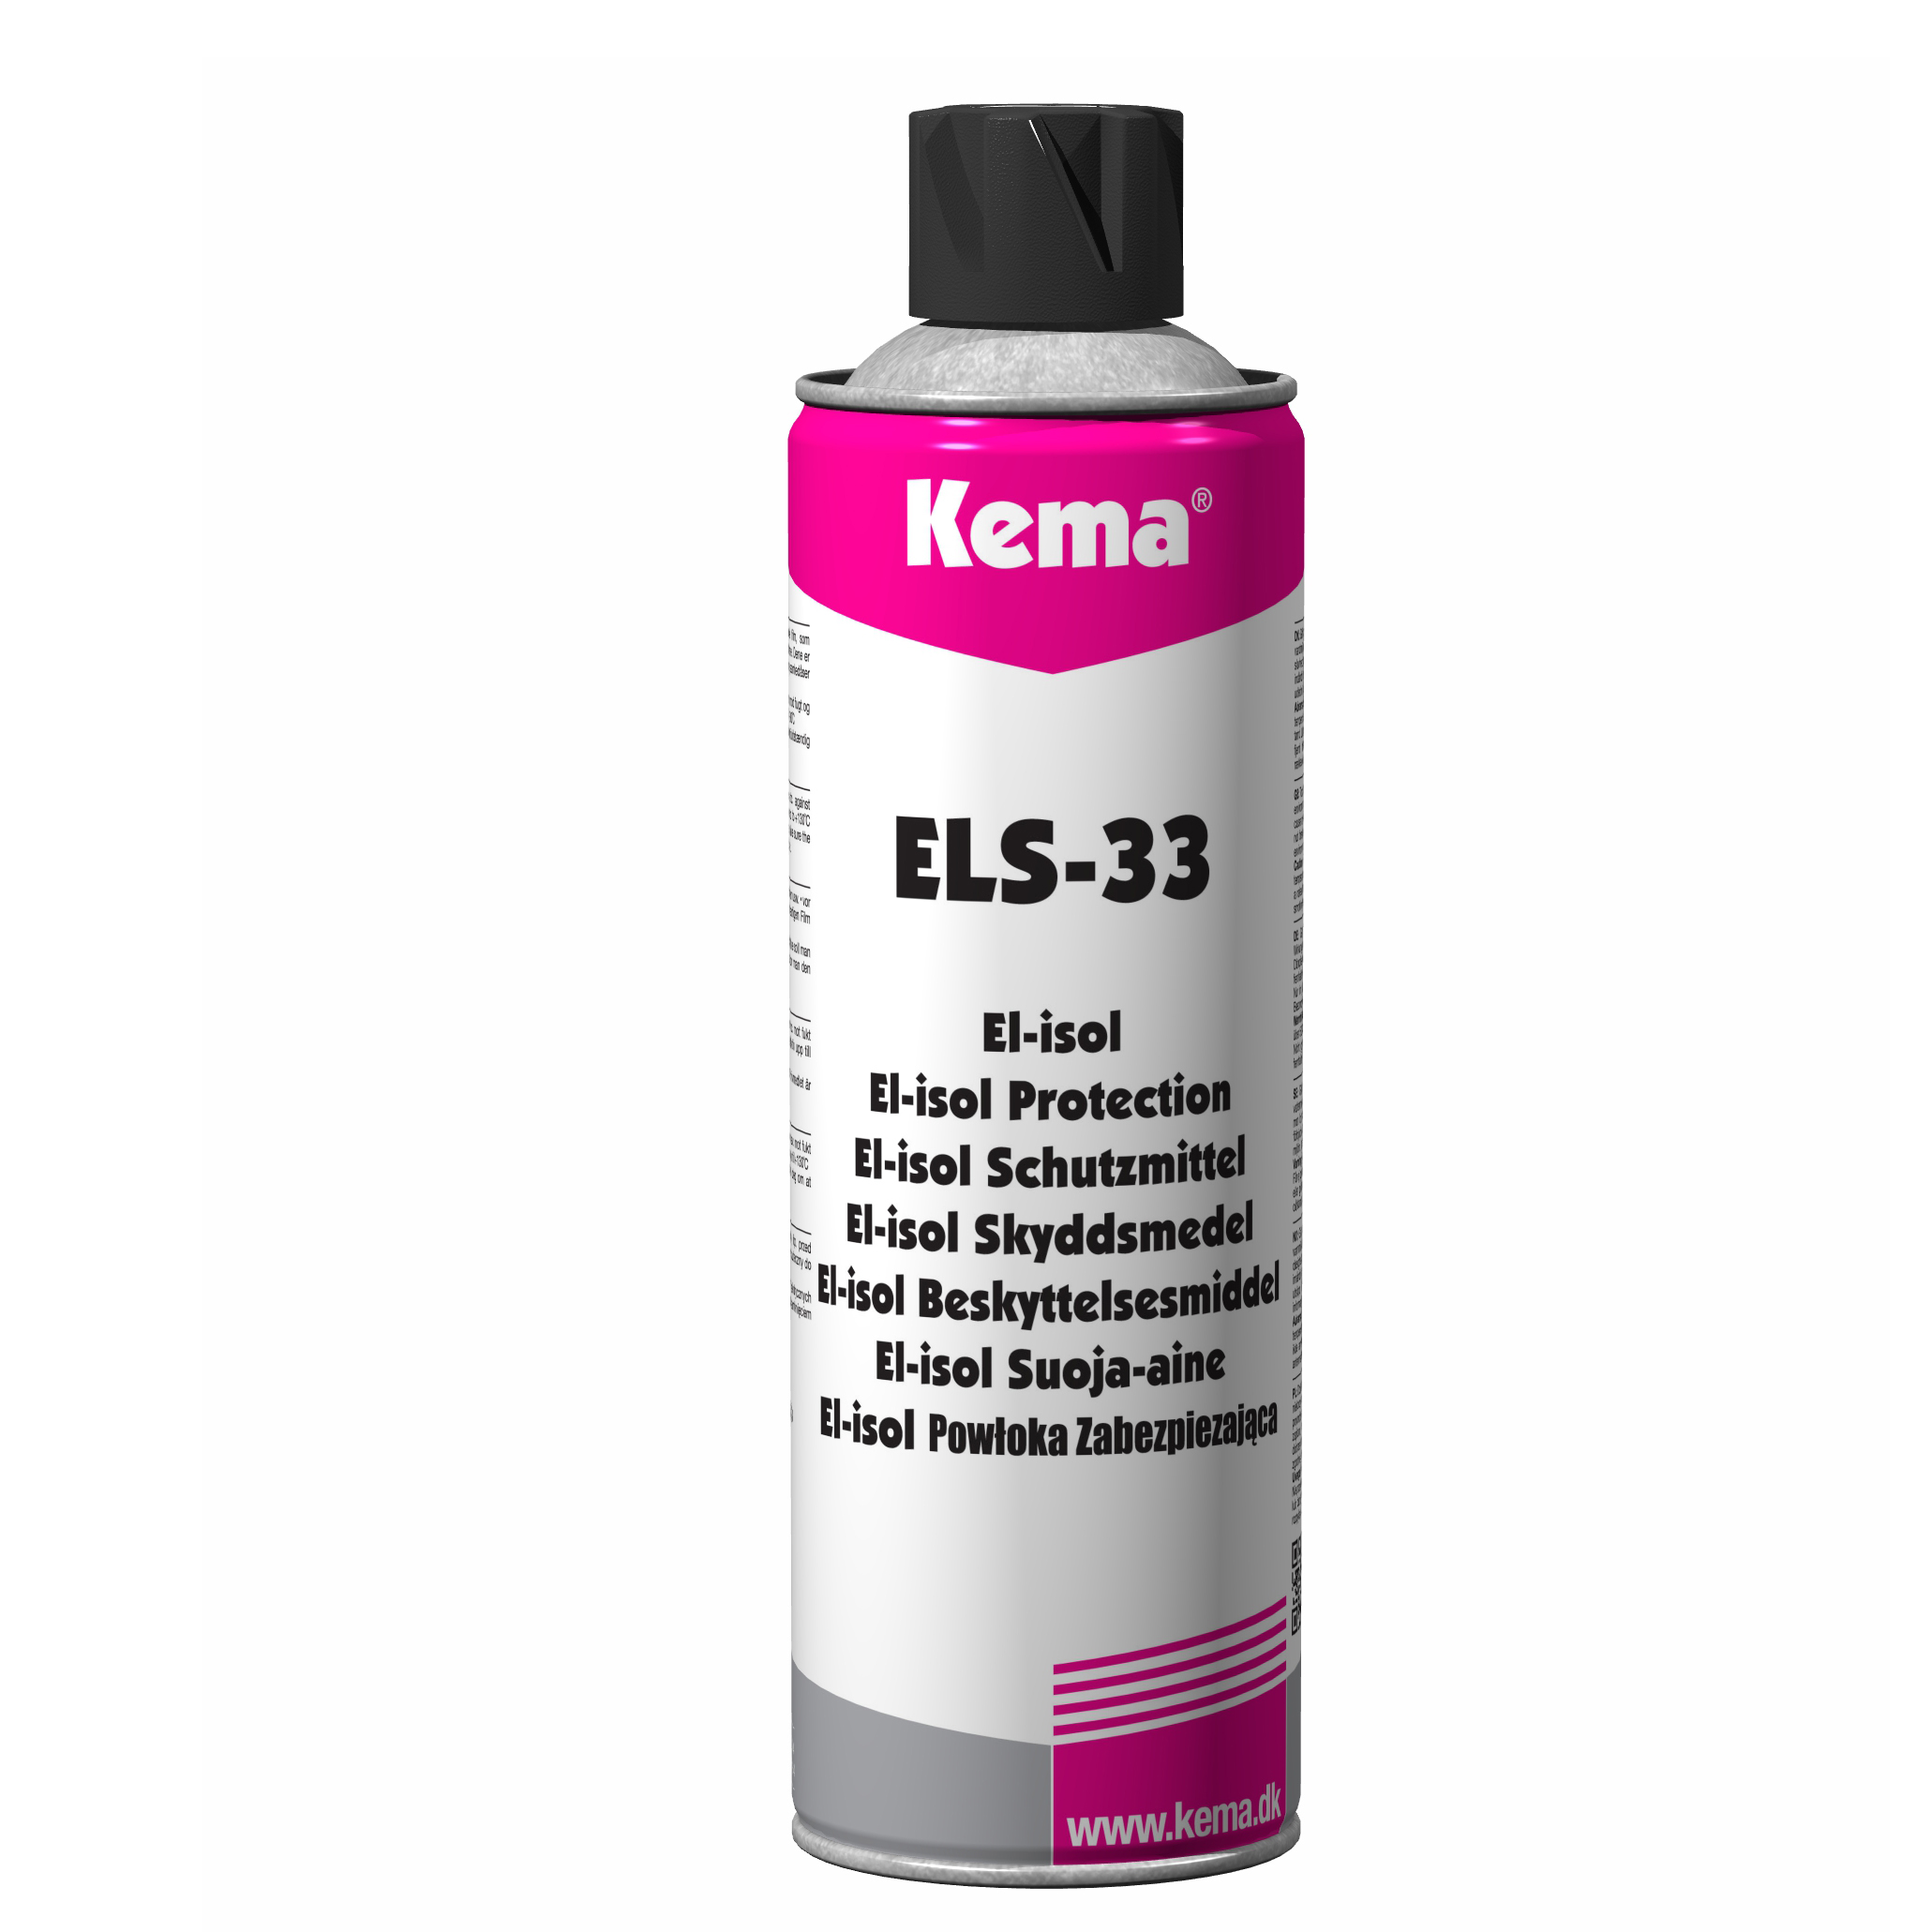 Kema ELS-33 Protector防锈剂